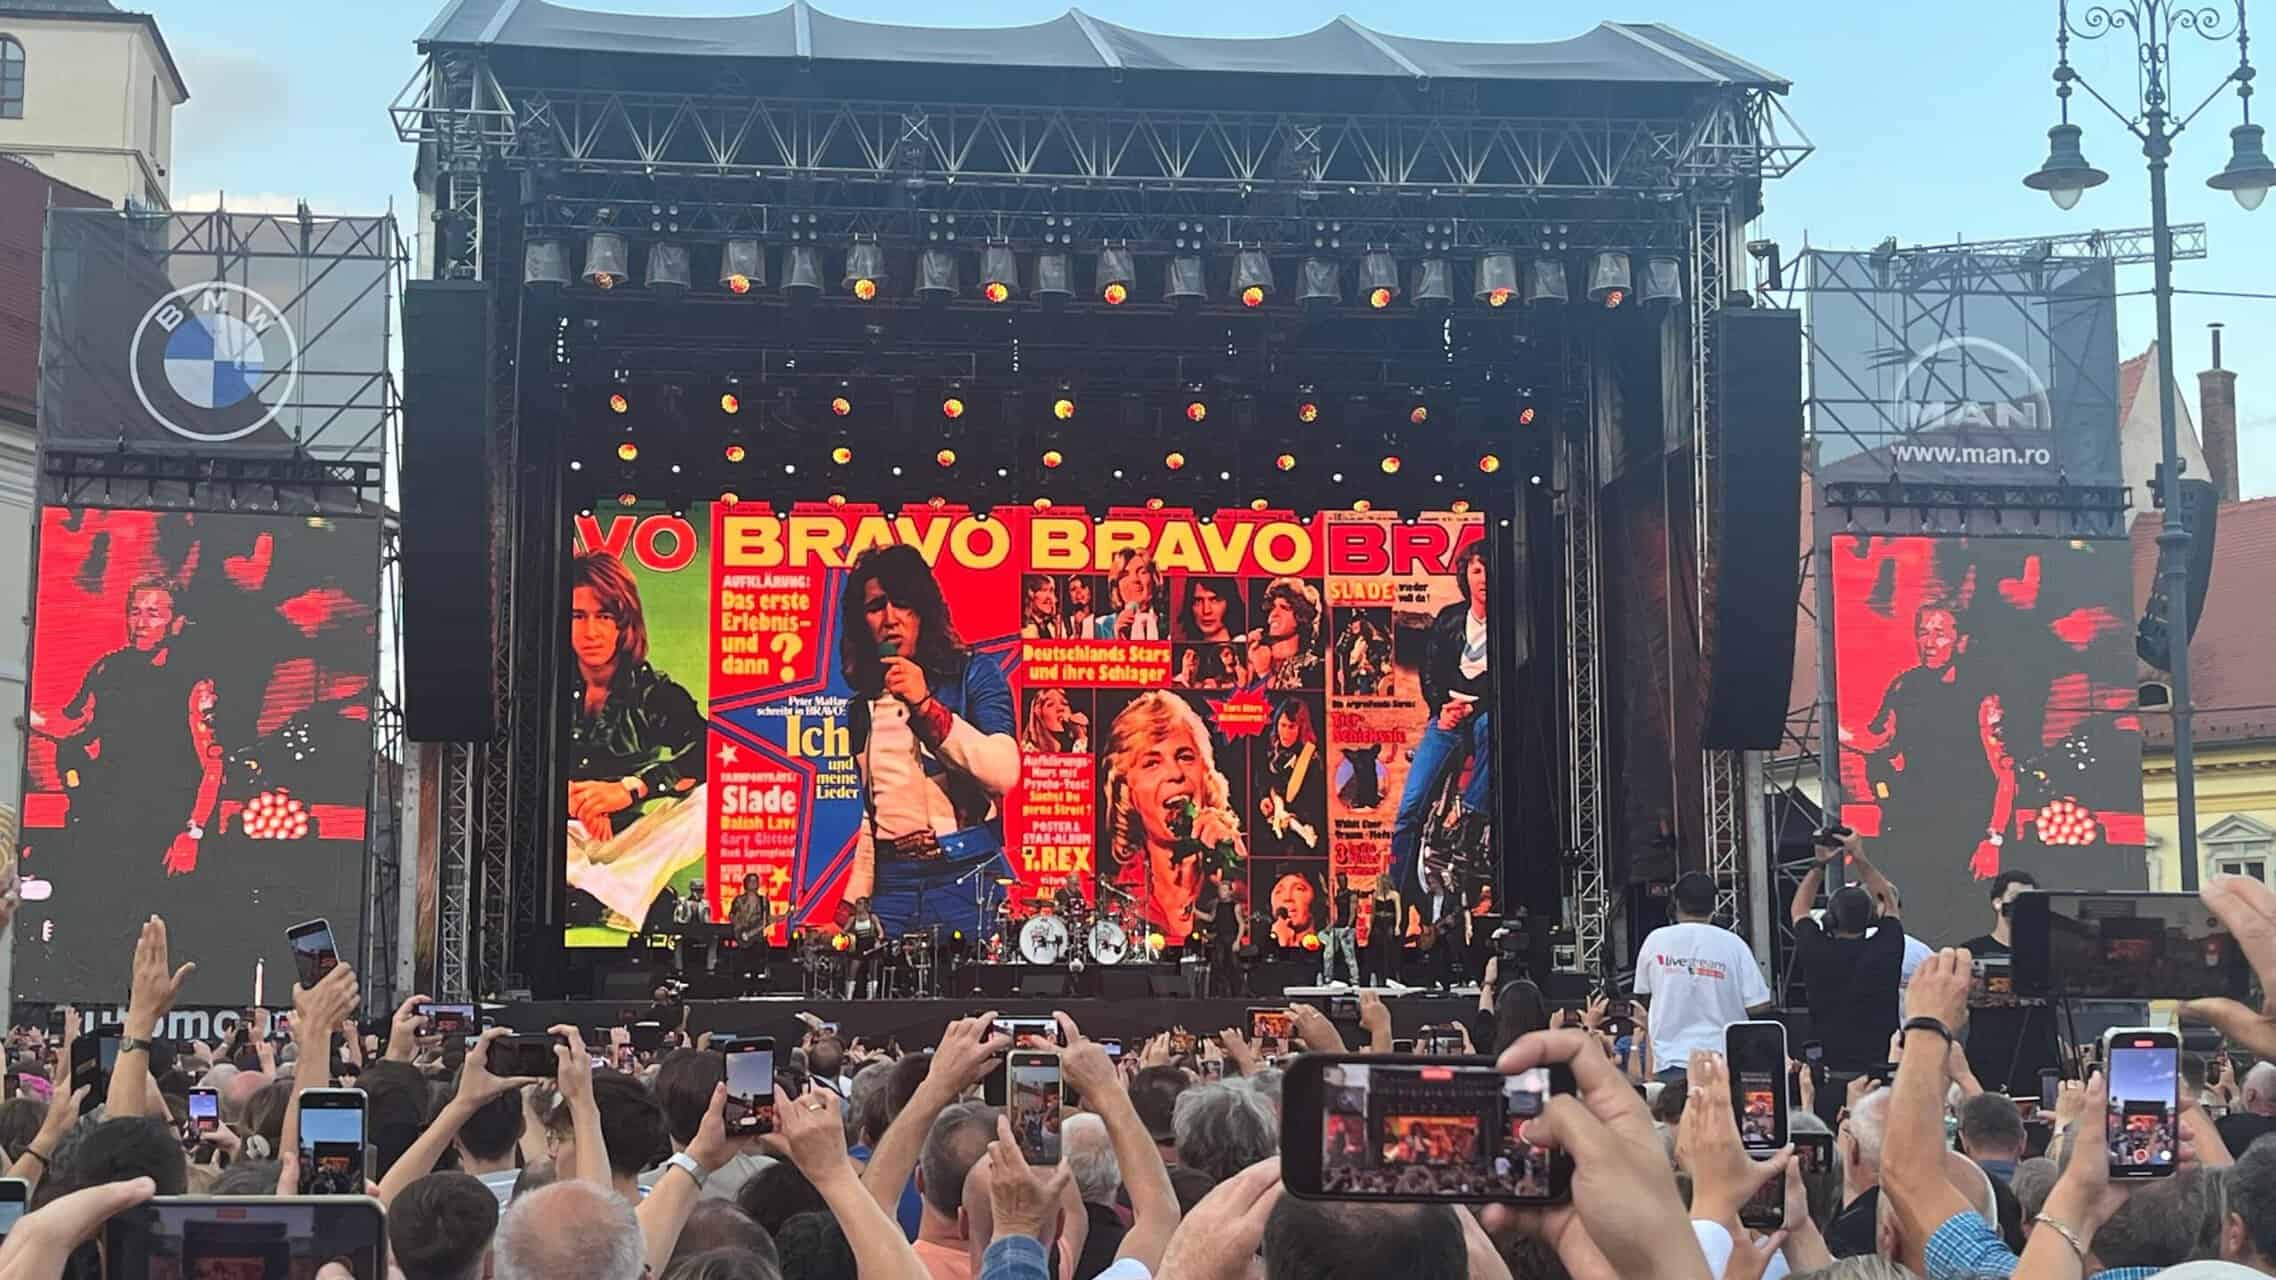 atmosferă electrizantă la concertul lui peter maffay de la sibiu. peste 20.000 de sași și iubitori de muzică rock au invadat piața mare (foto video)